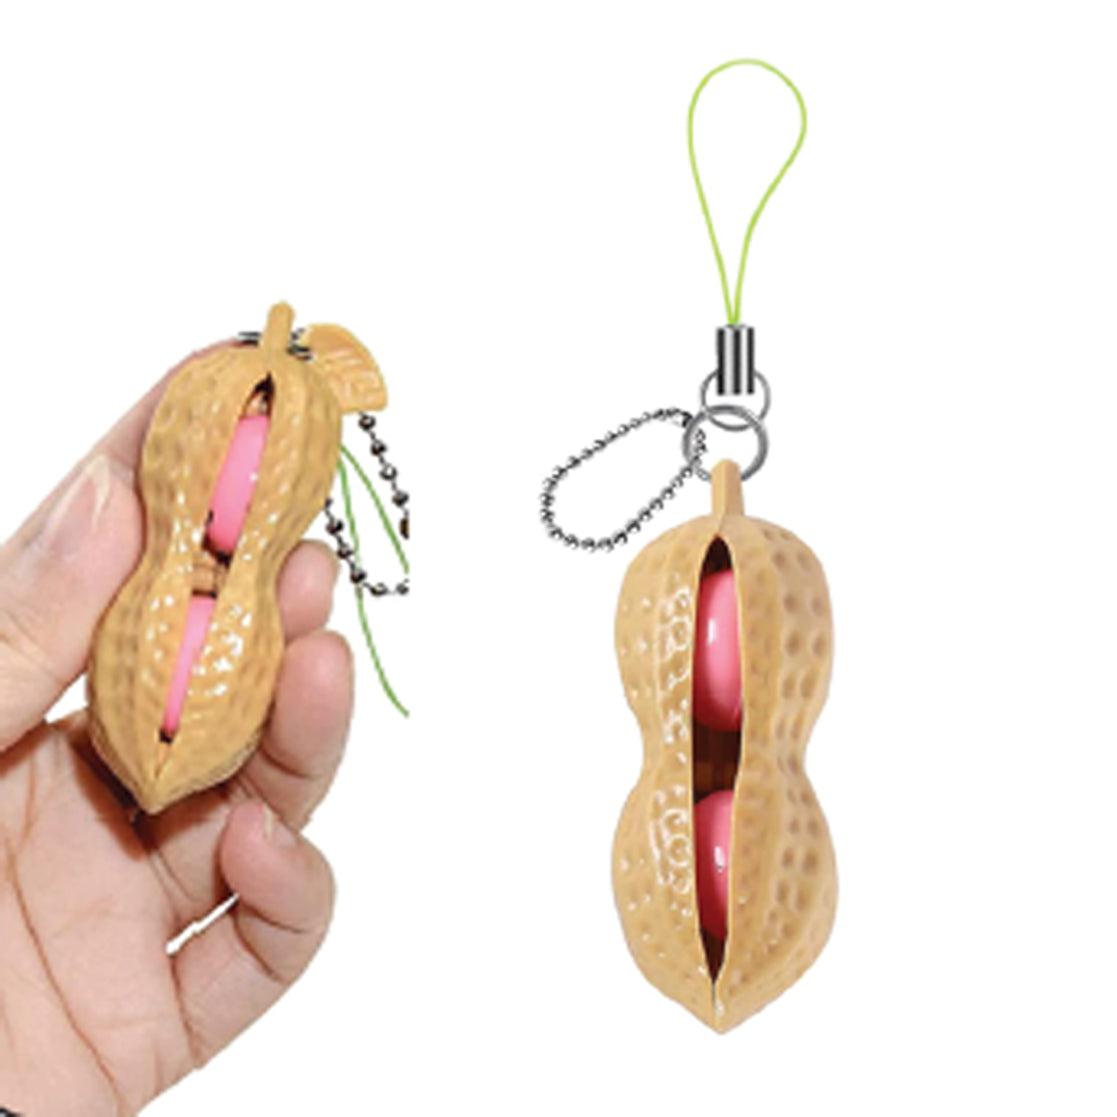 Sensory Peanut Pod-Novelty-Watchitude-Yellow Springs Toy Company